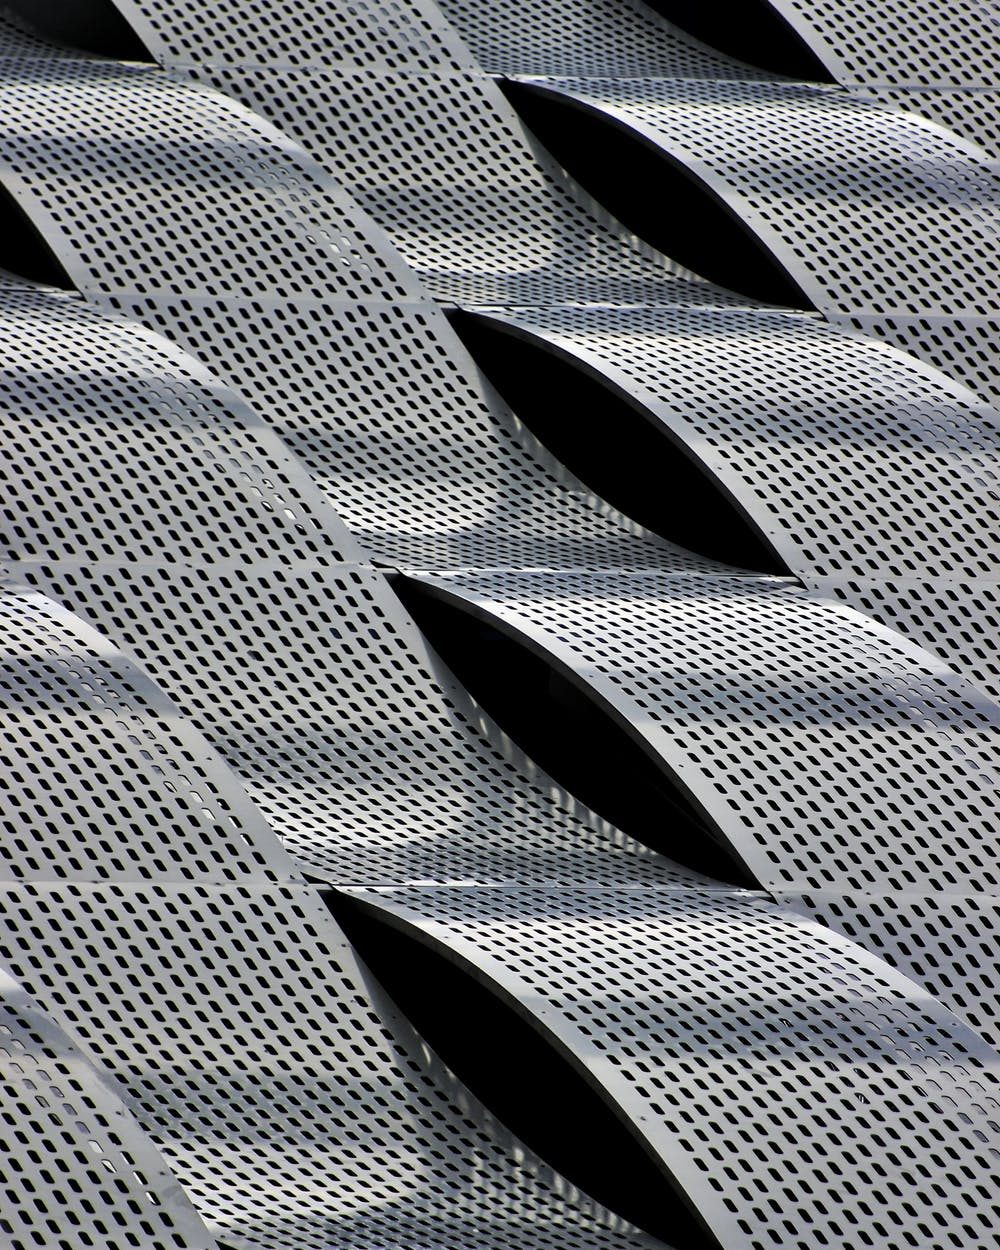 perforated metal sheet kansas, kansas perforated metal sheet, branko perforated metal sheet